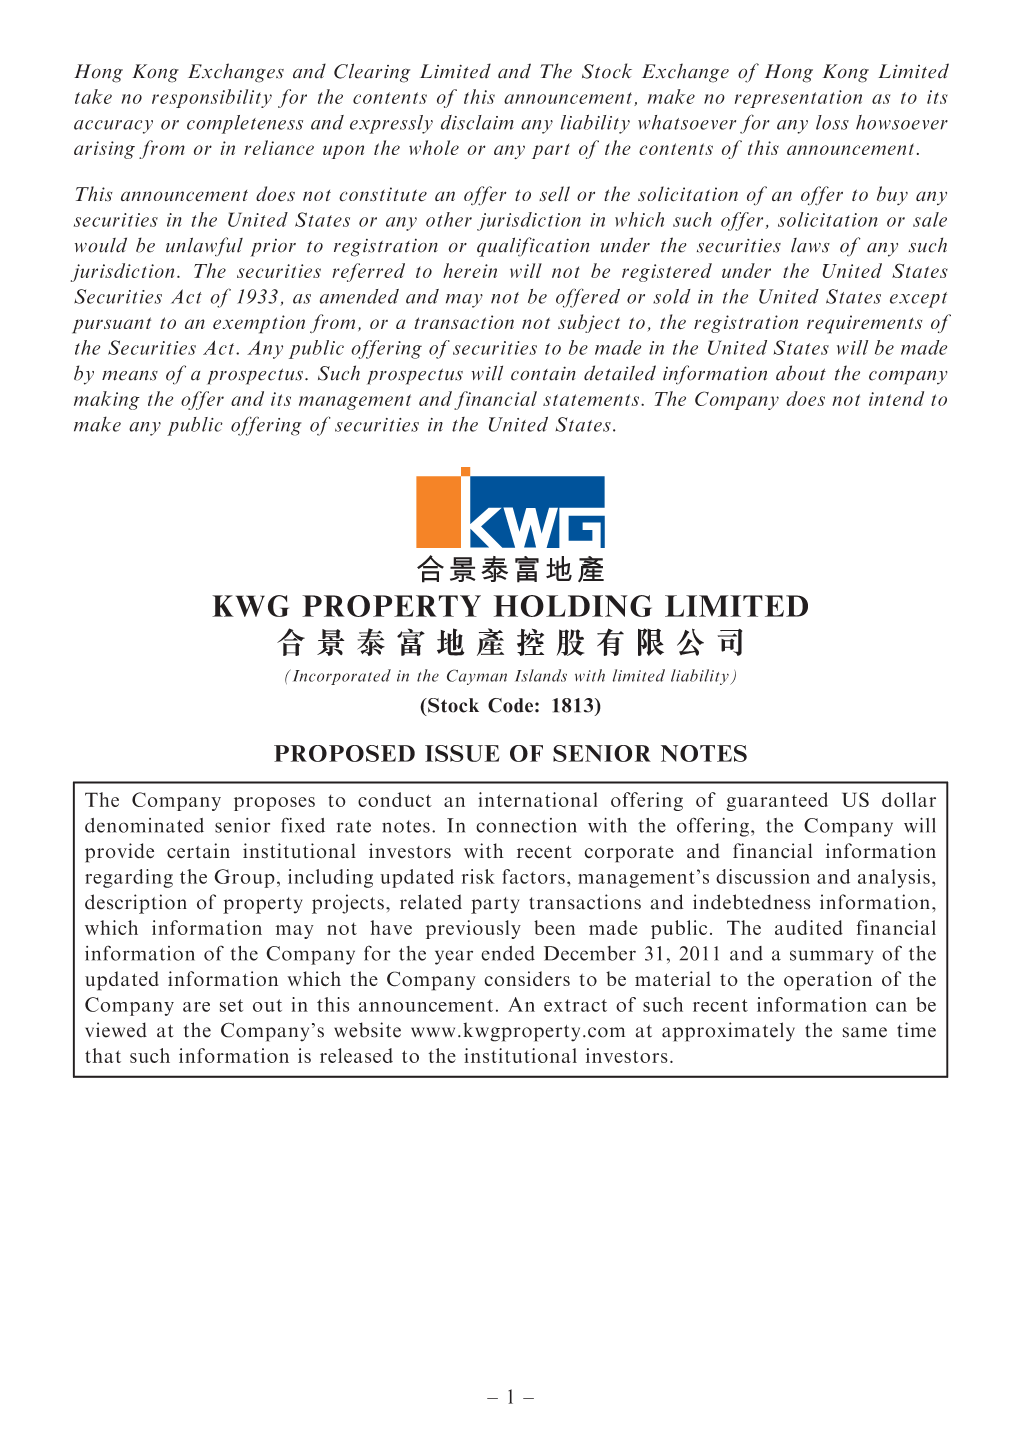 Kwg Property Holding Limited 合景泰富地產控股有限公司